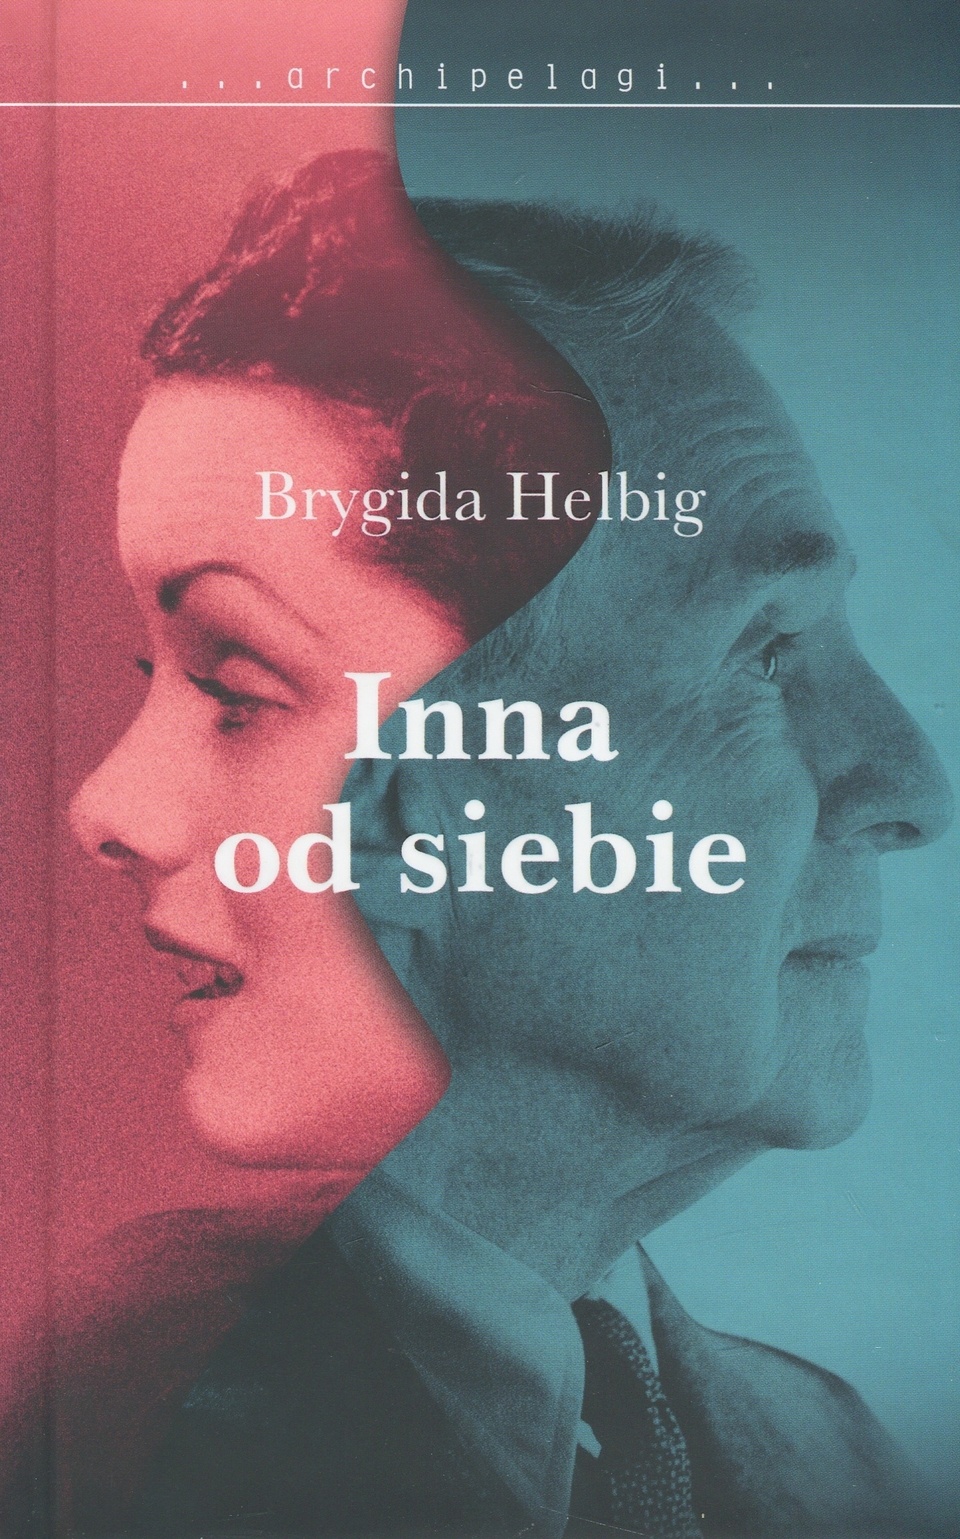 Książka Brygidy Helbig ukazała się w serii "Archipelagi", fot. [Radio Szczecin]